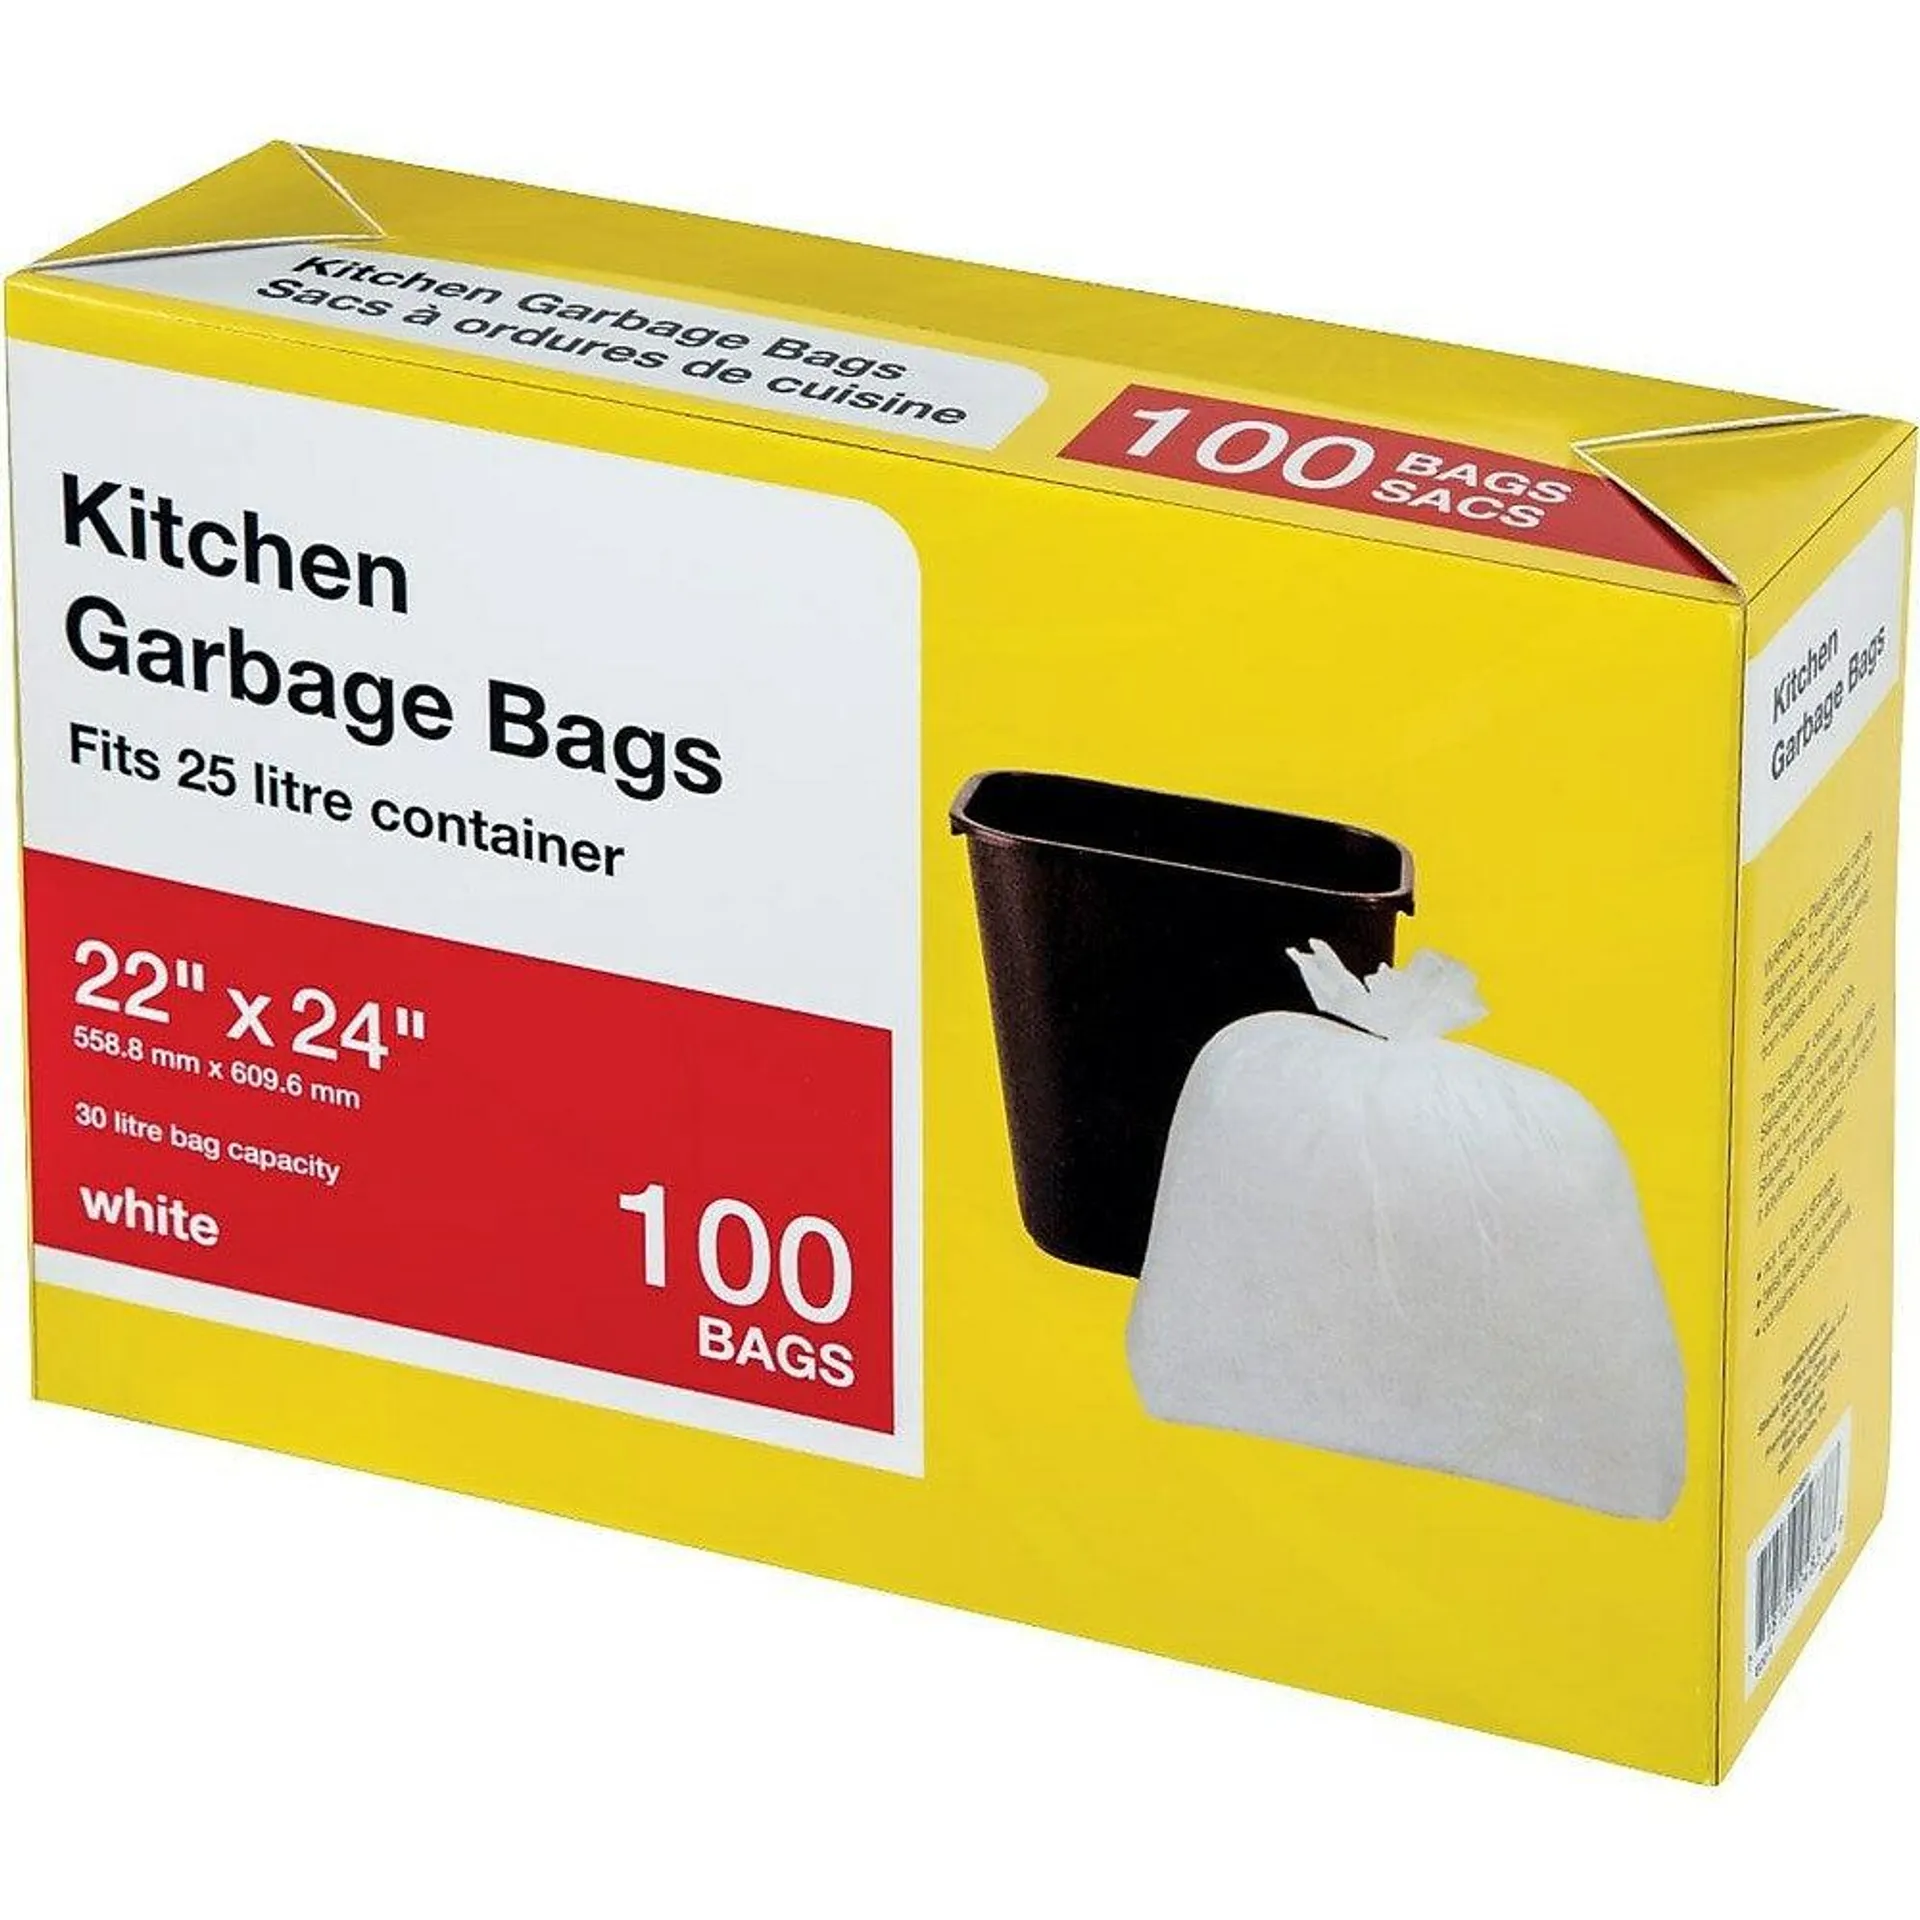 Large Kitchen Garbage Bags, White, 100 Pack